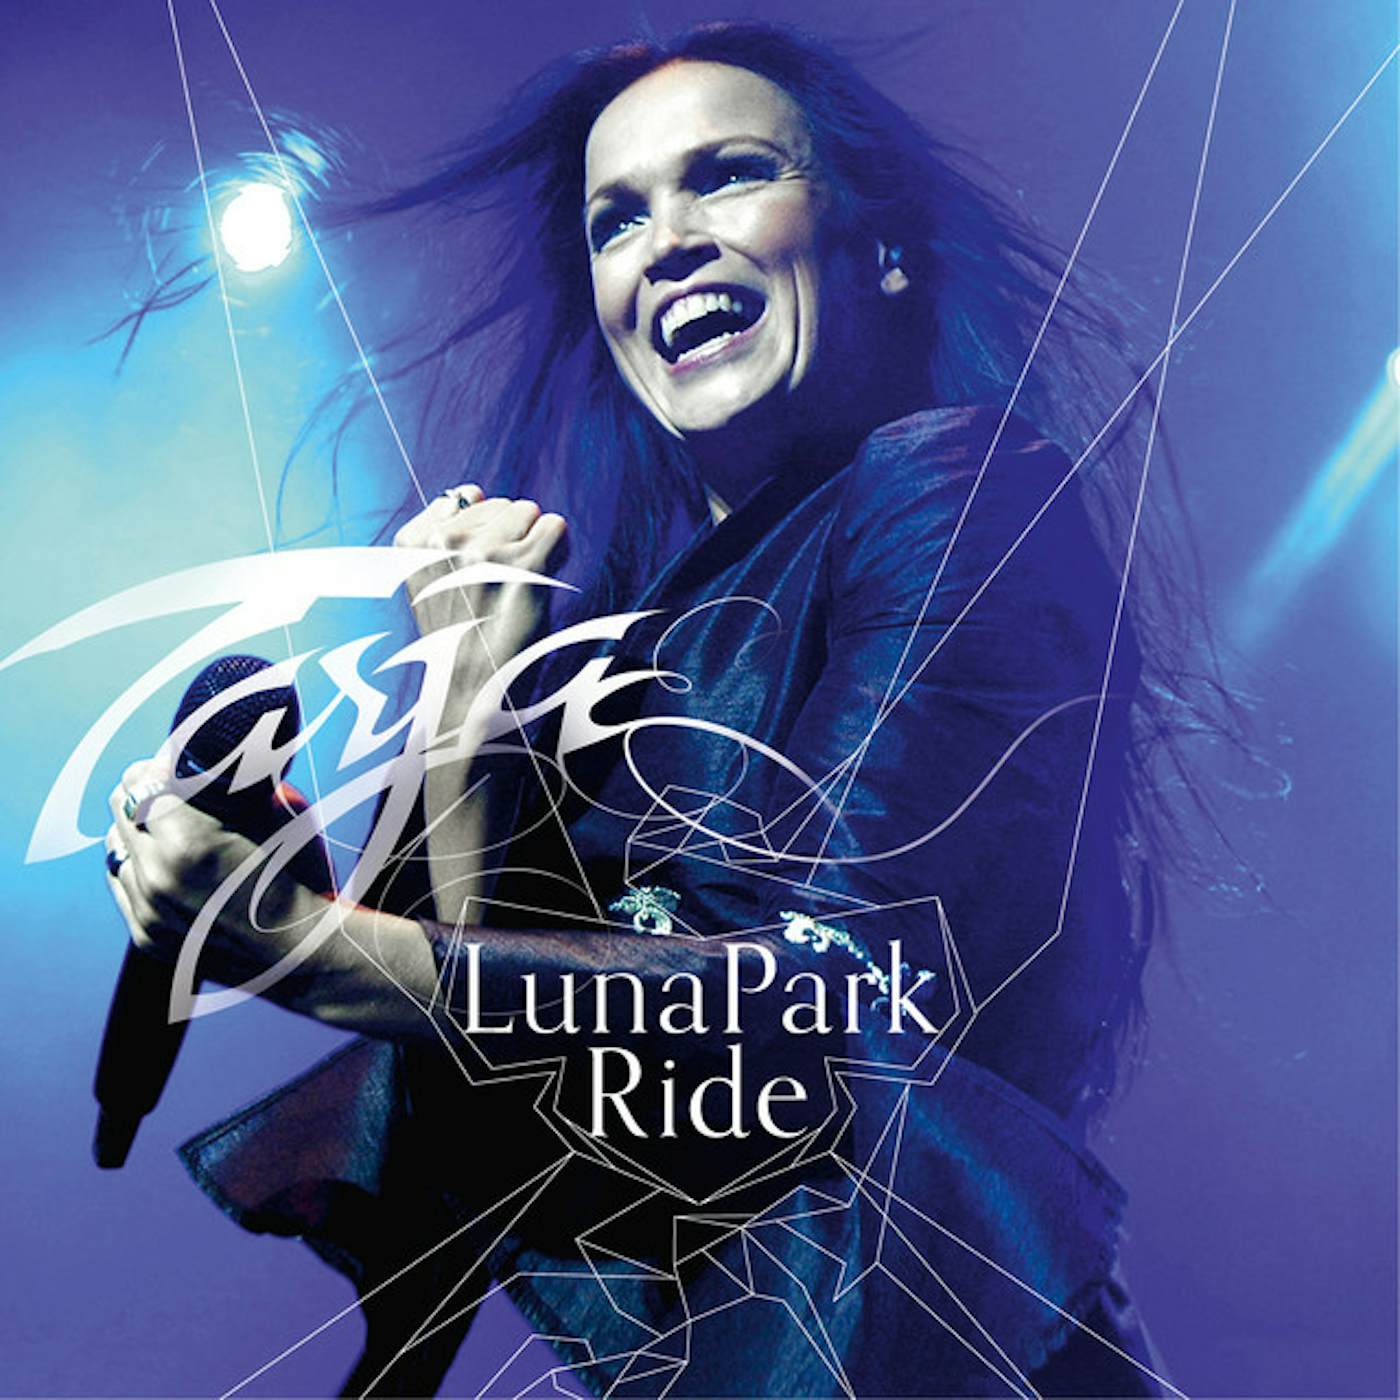 Tarja Luna Park Ride Vinyl Record